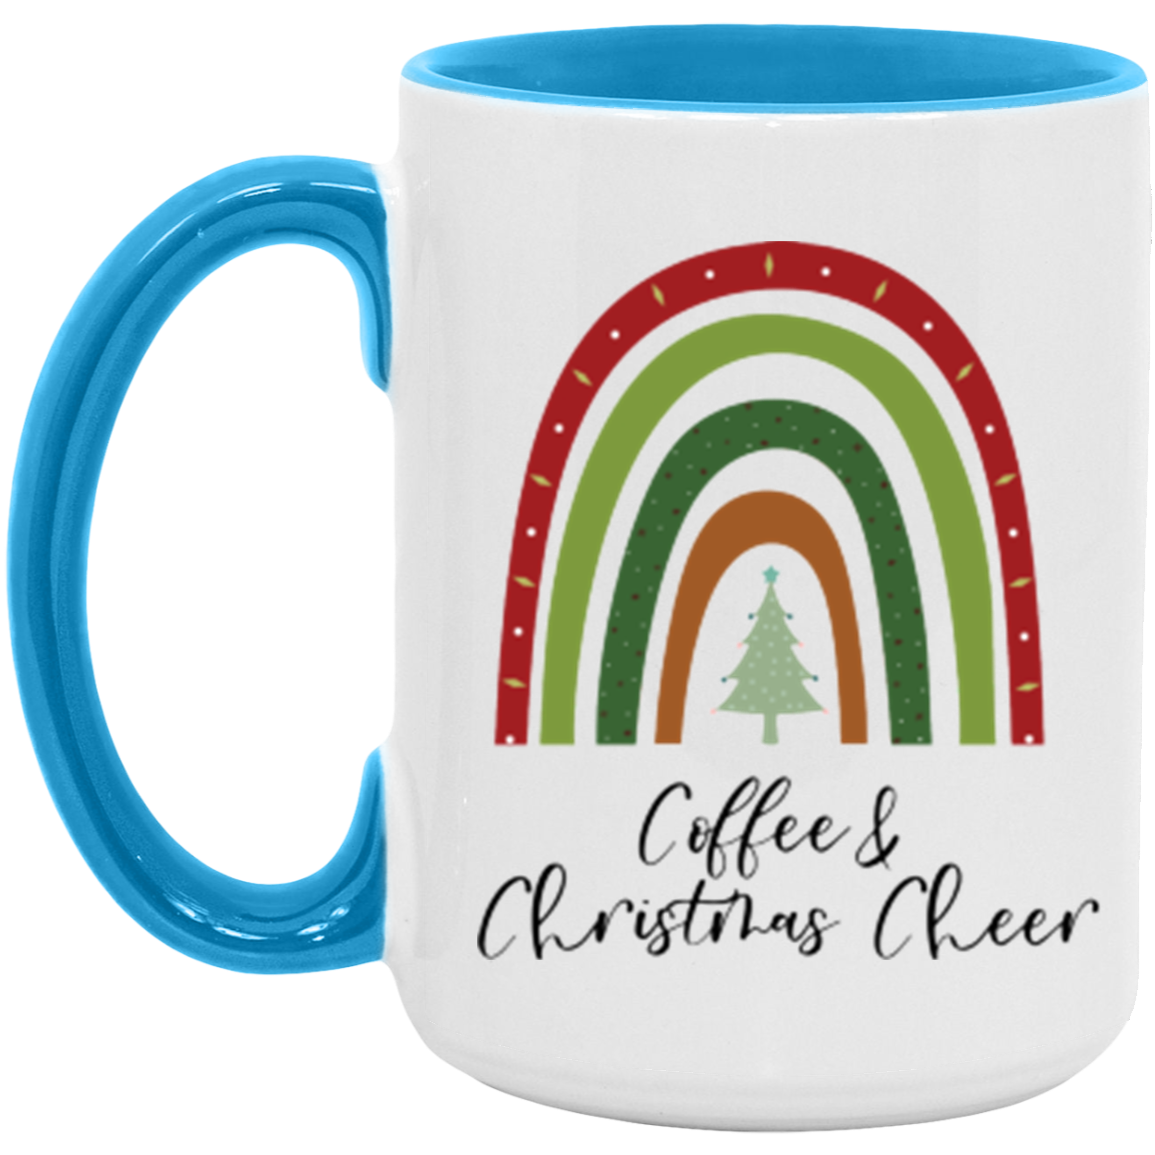 Rainbow Coffee and Christmas Cheer Mug